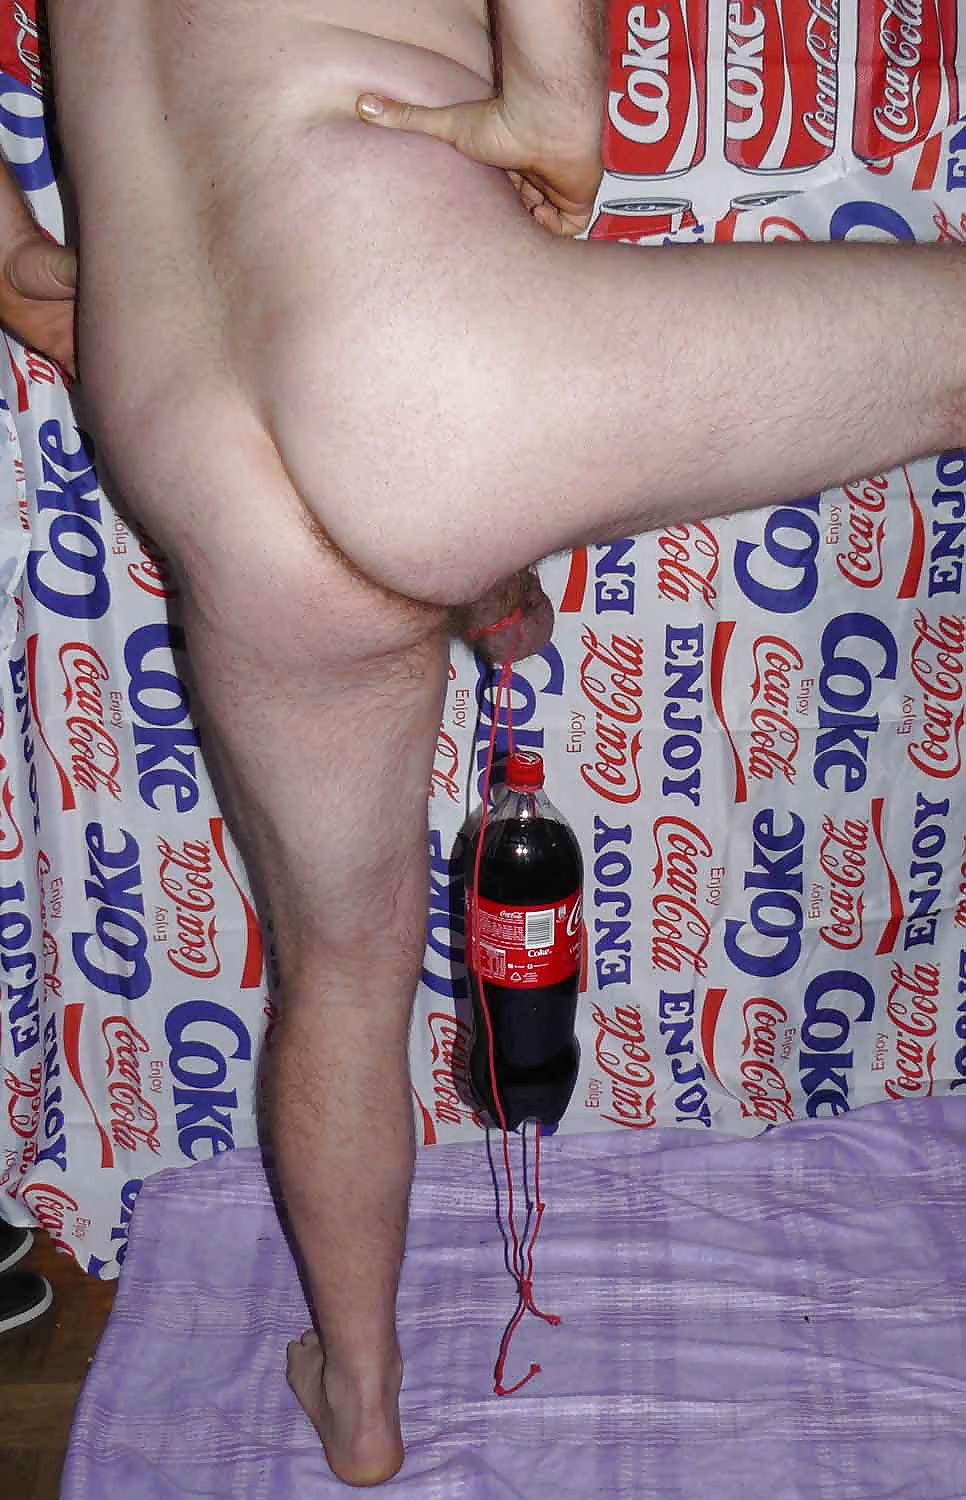 CBT coca cola